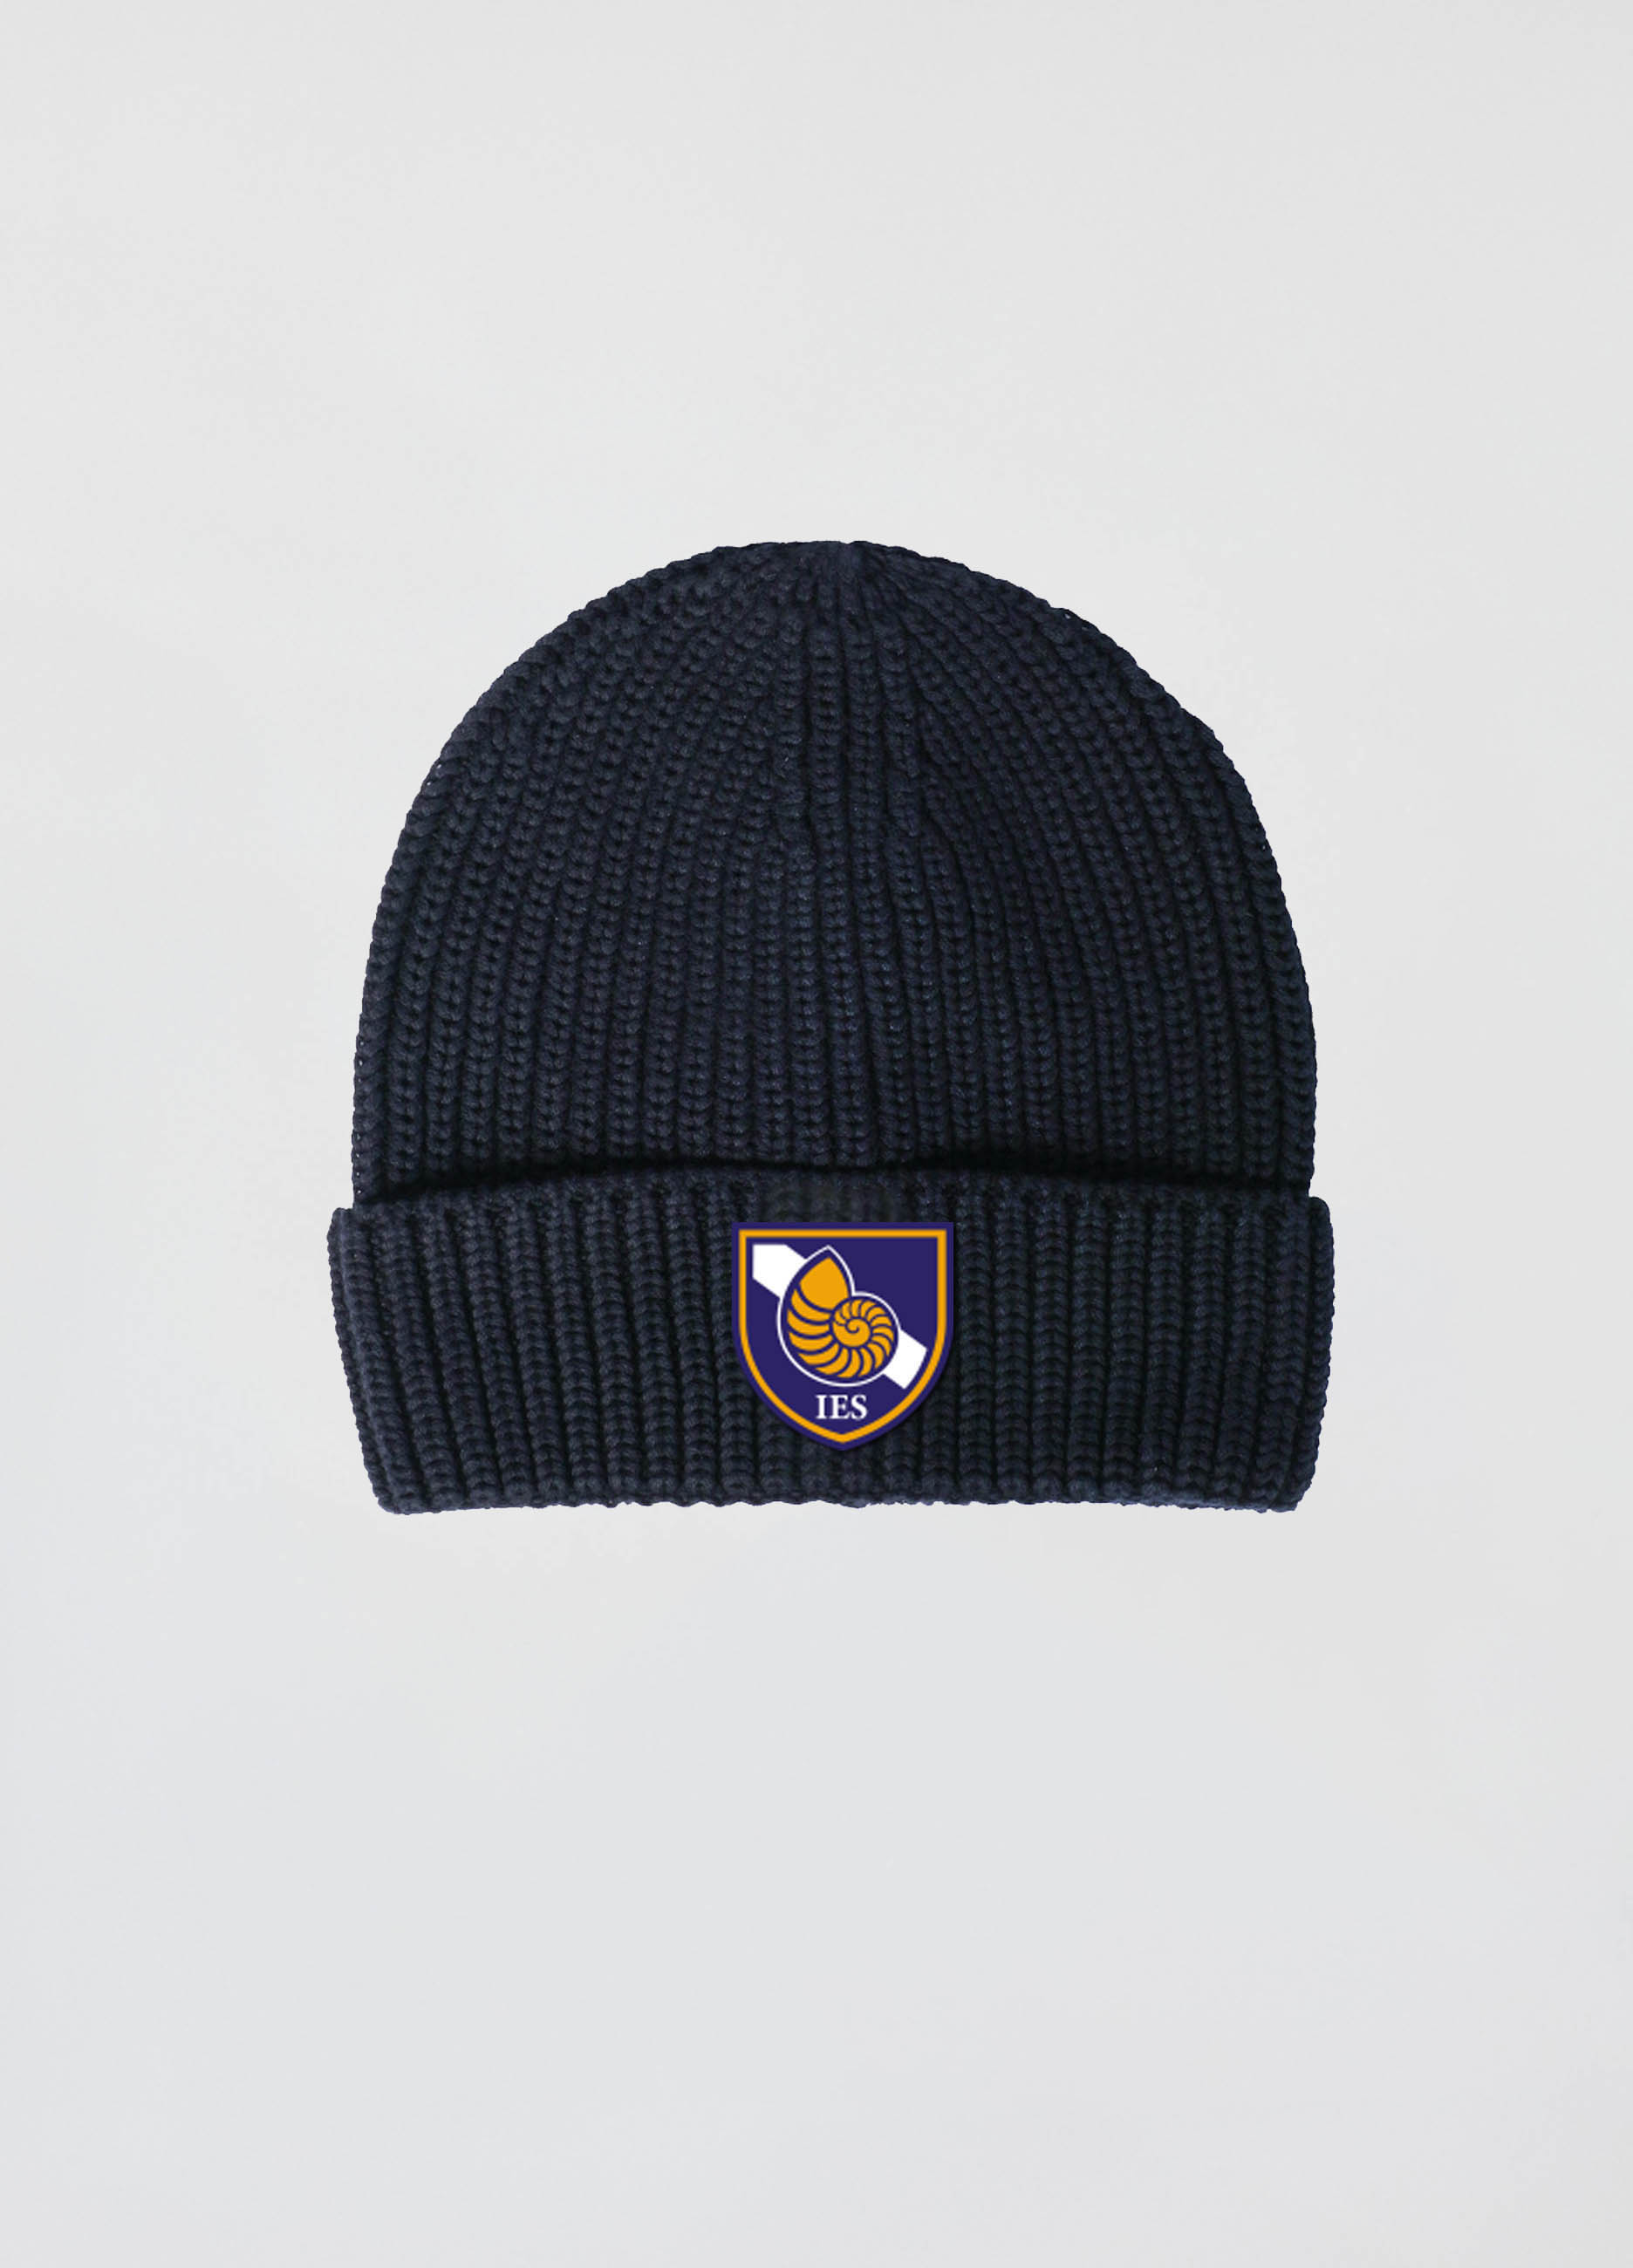 UNISEX - Cappello tricot.